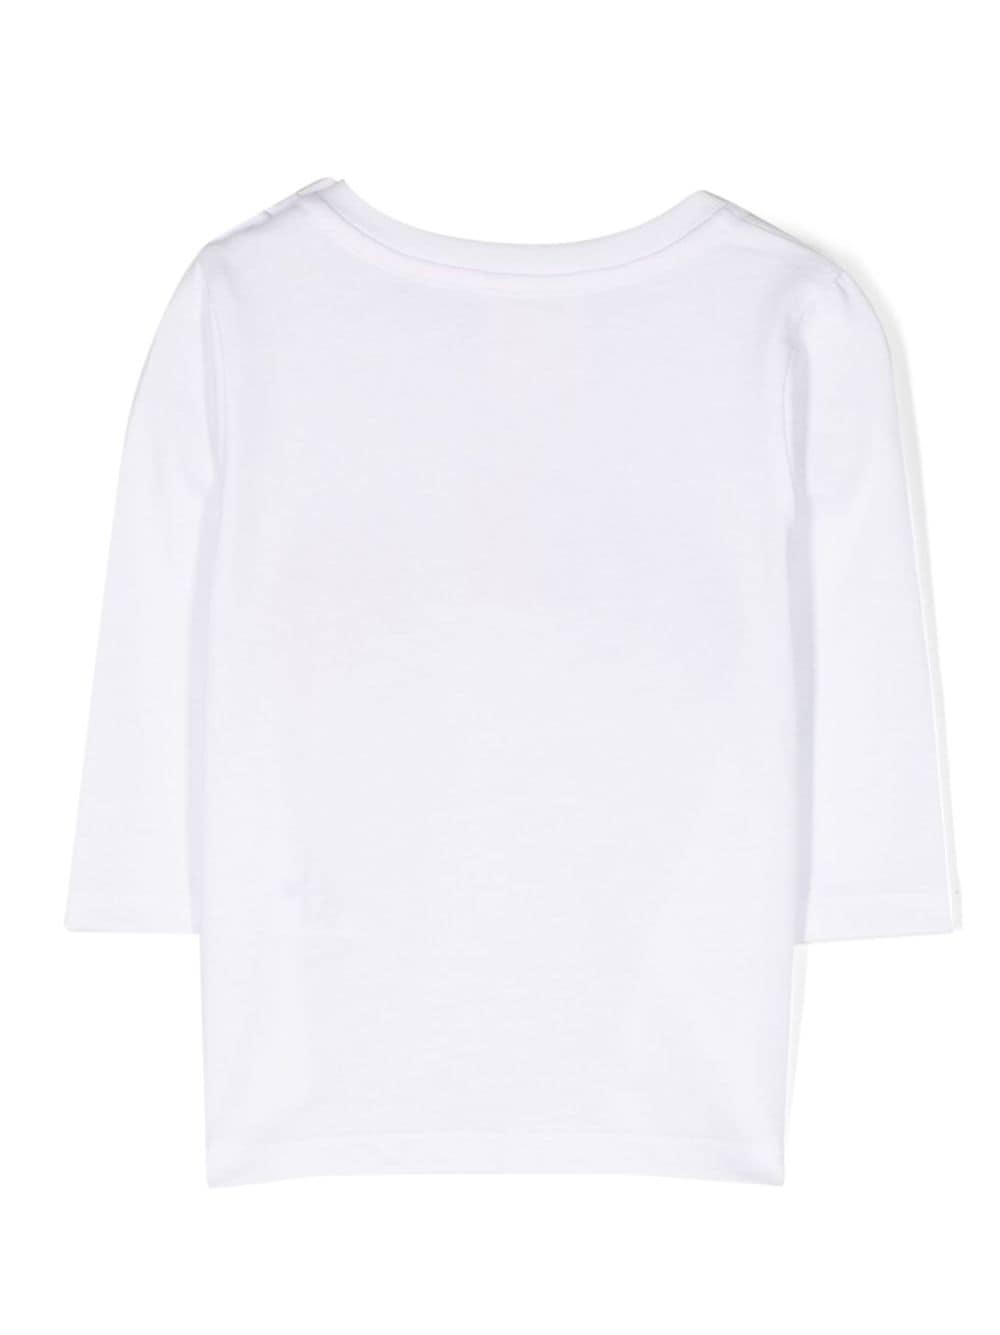 T-shirt bianca neonato con stampa multicolor